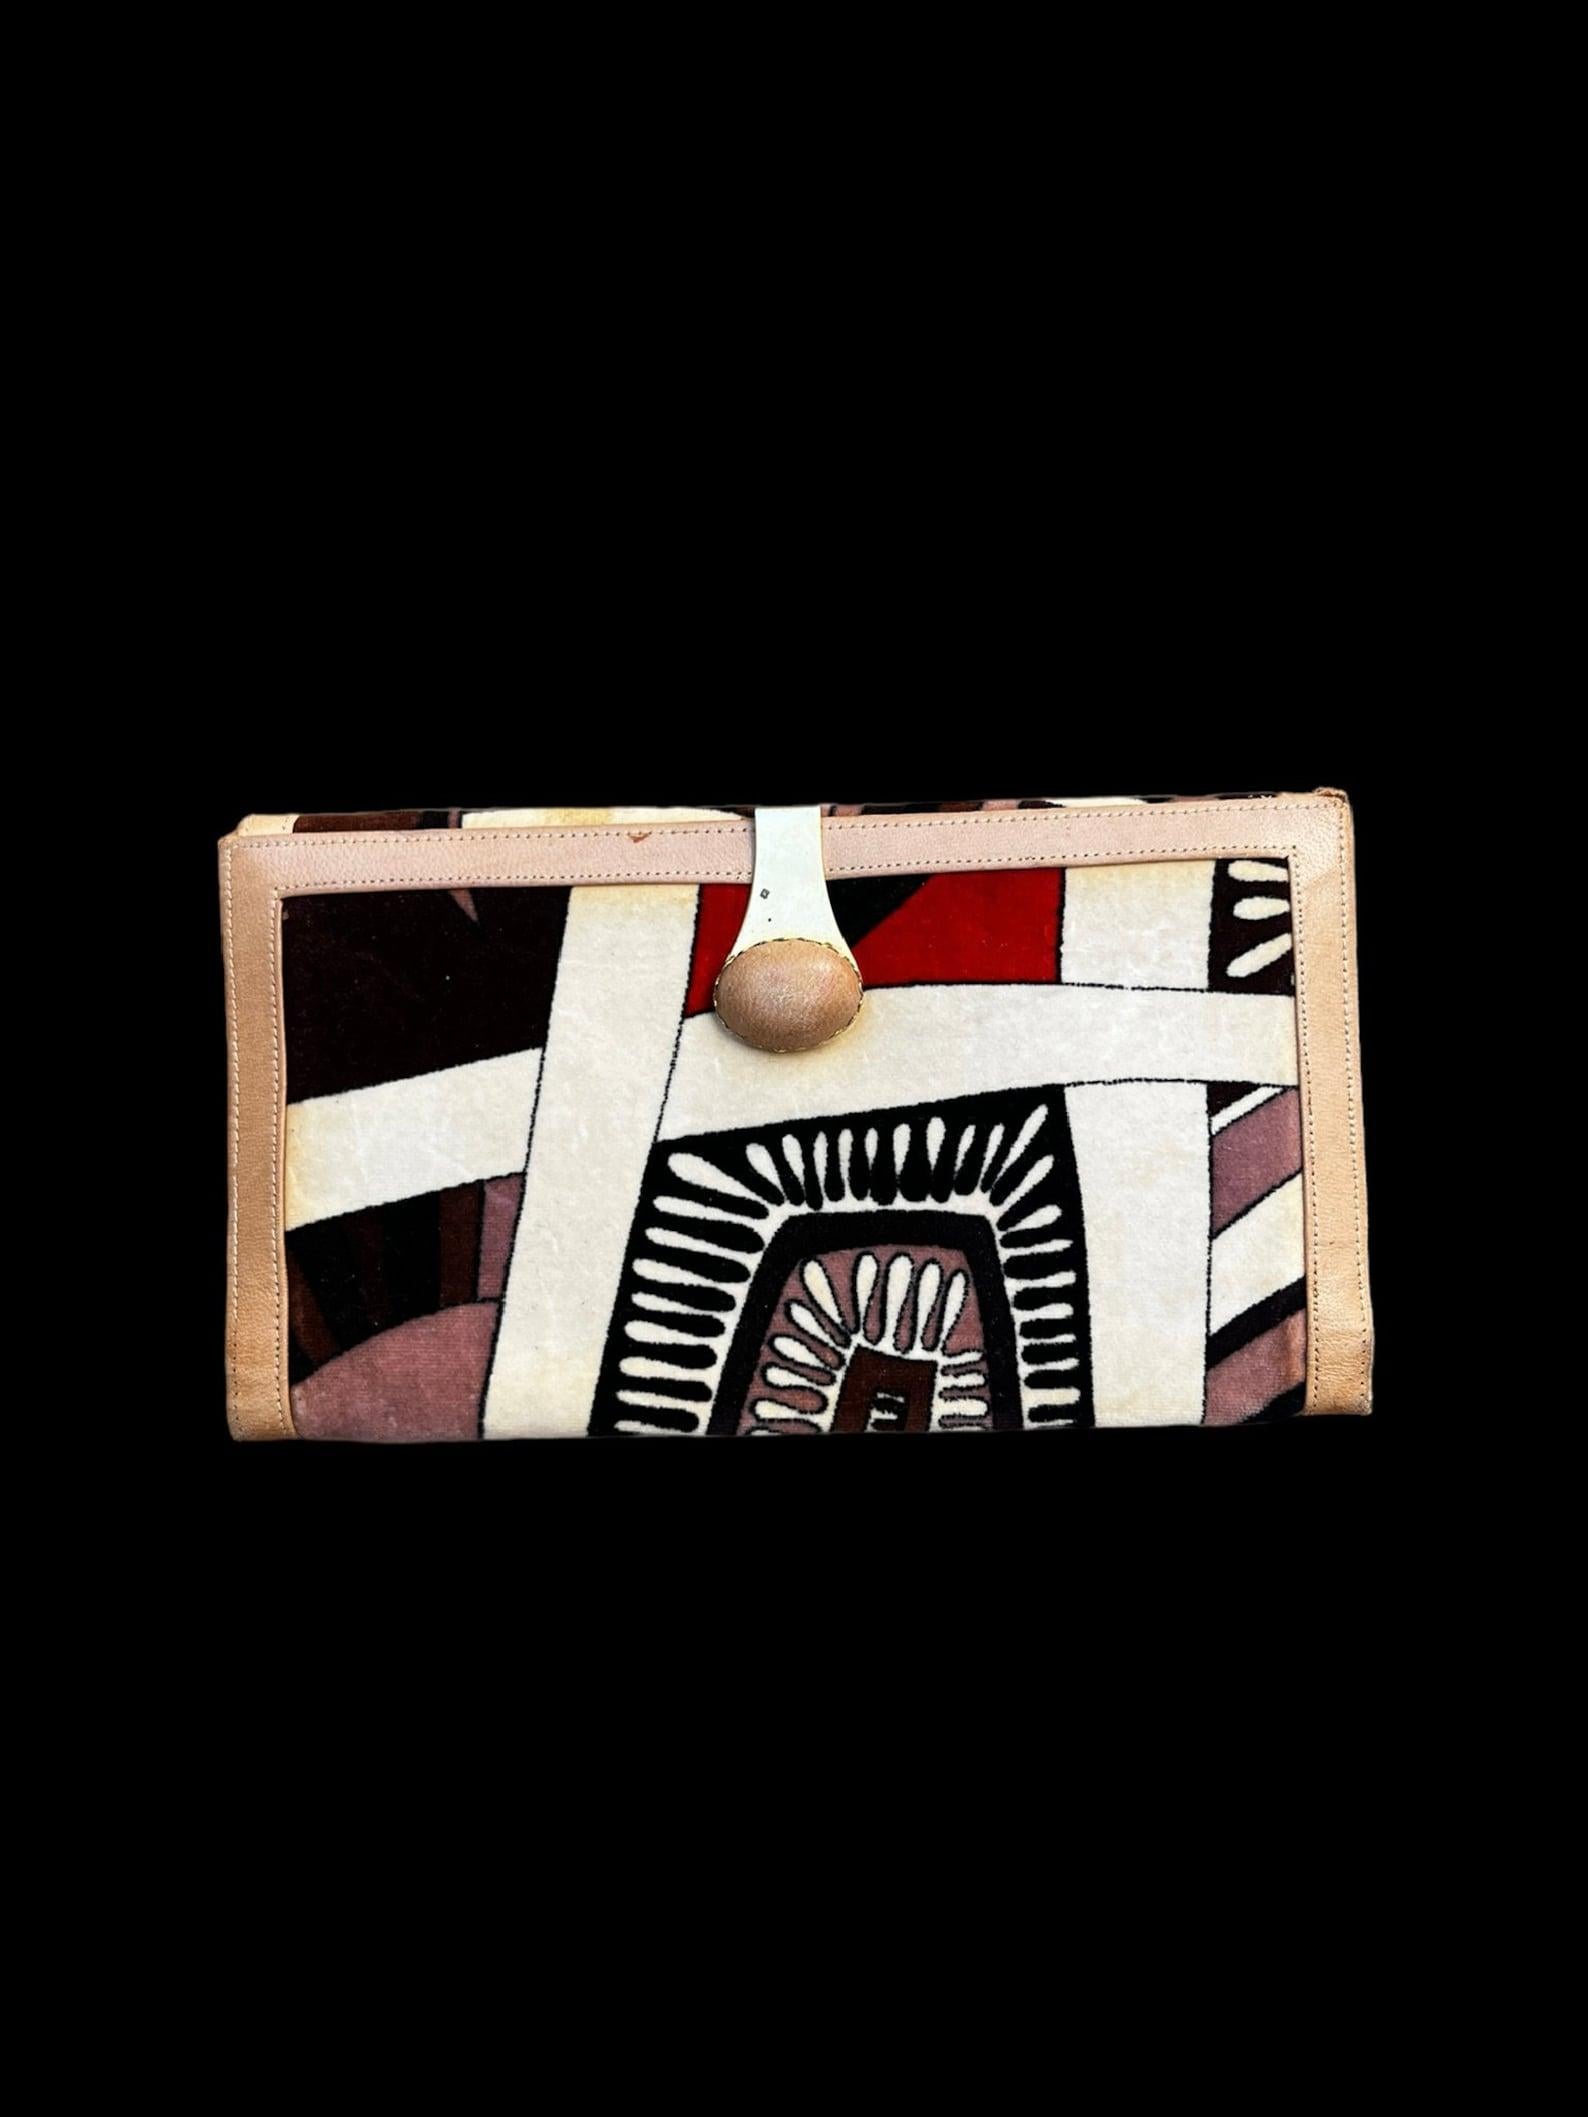 Vintage Emilio Pucci Geldbörse
Samt mit mehrfarbigem Pucci-Druck
hellbraunes Leder
Schnappverschluss auf einer Seite
goldener Metallclipverschluss auf der anderen Seite

✩ Ein wunderbares Stück Modegeschichte!

Circa 1960er Jahre

Markierungen: